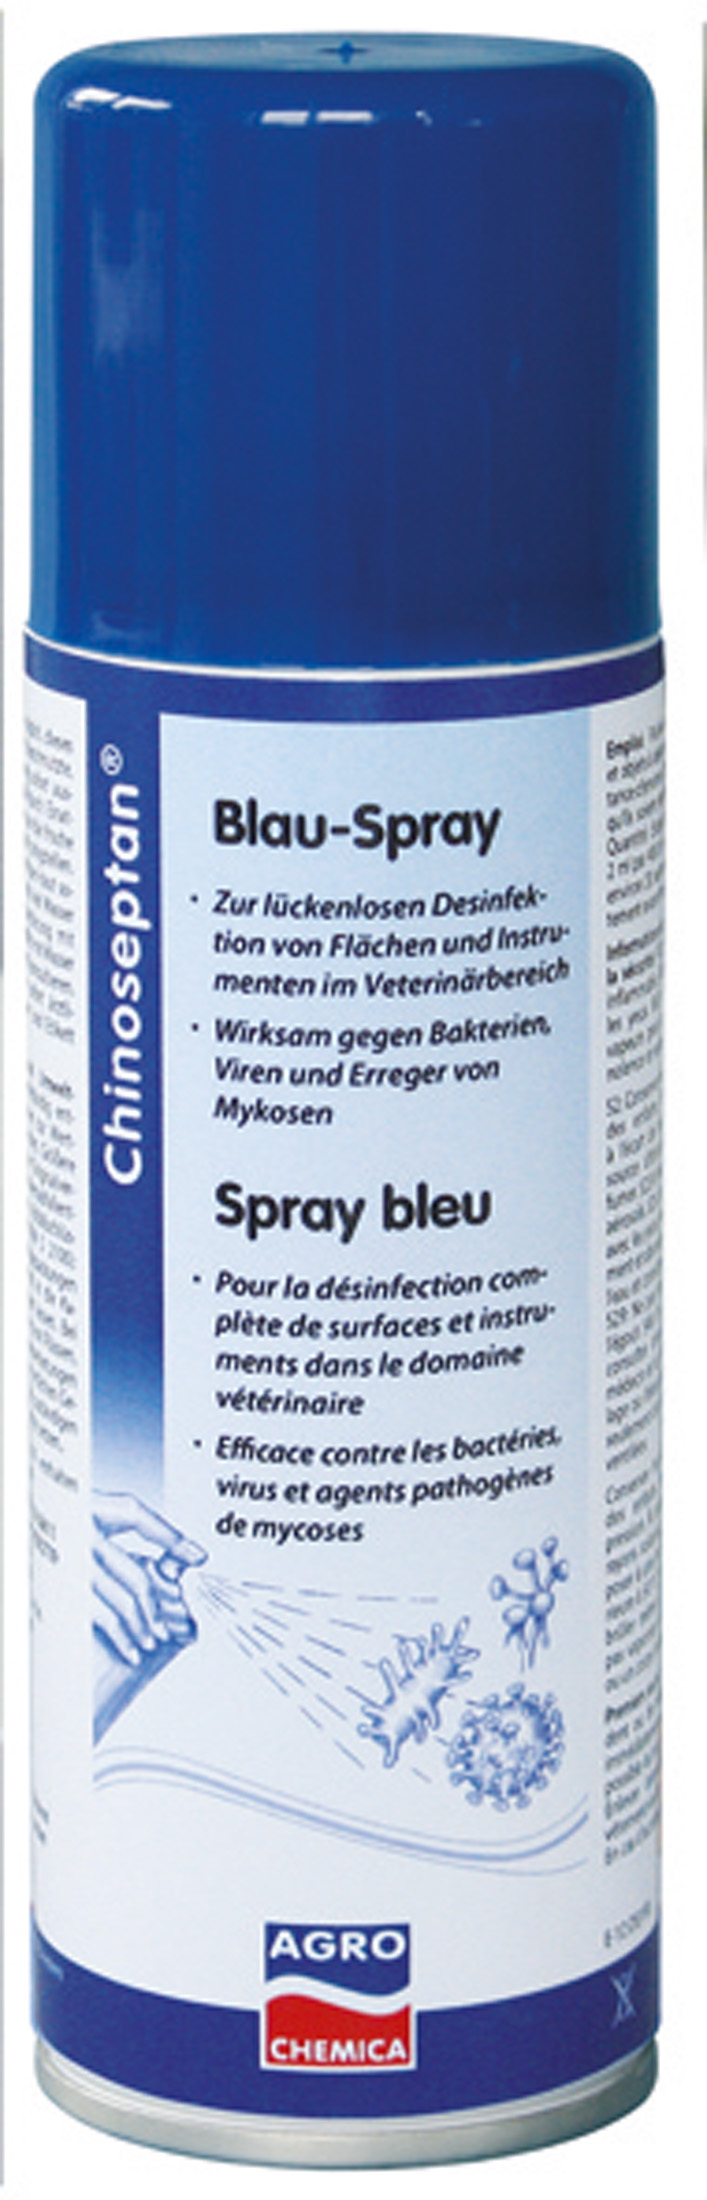 Chinoseptan Blau-Spray für Flächendesinfektion